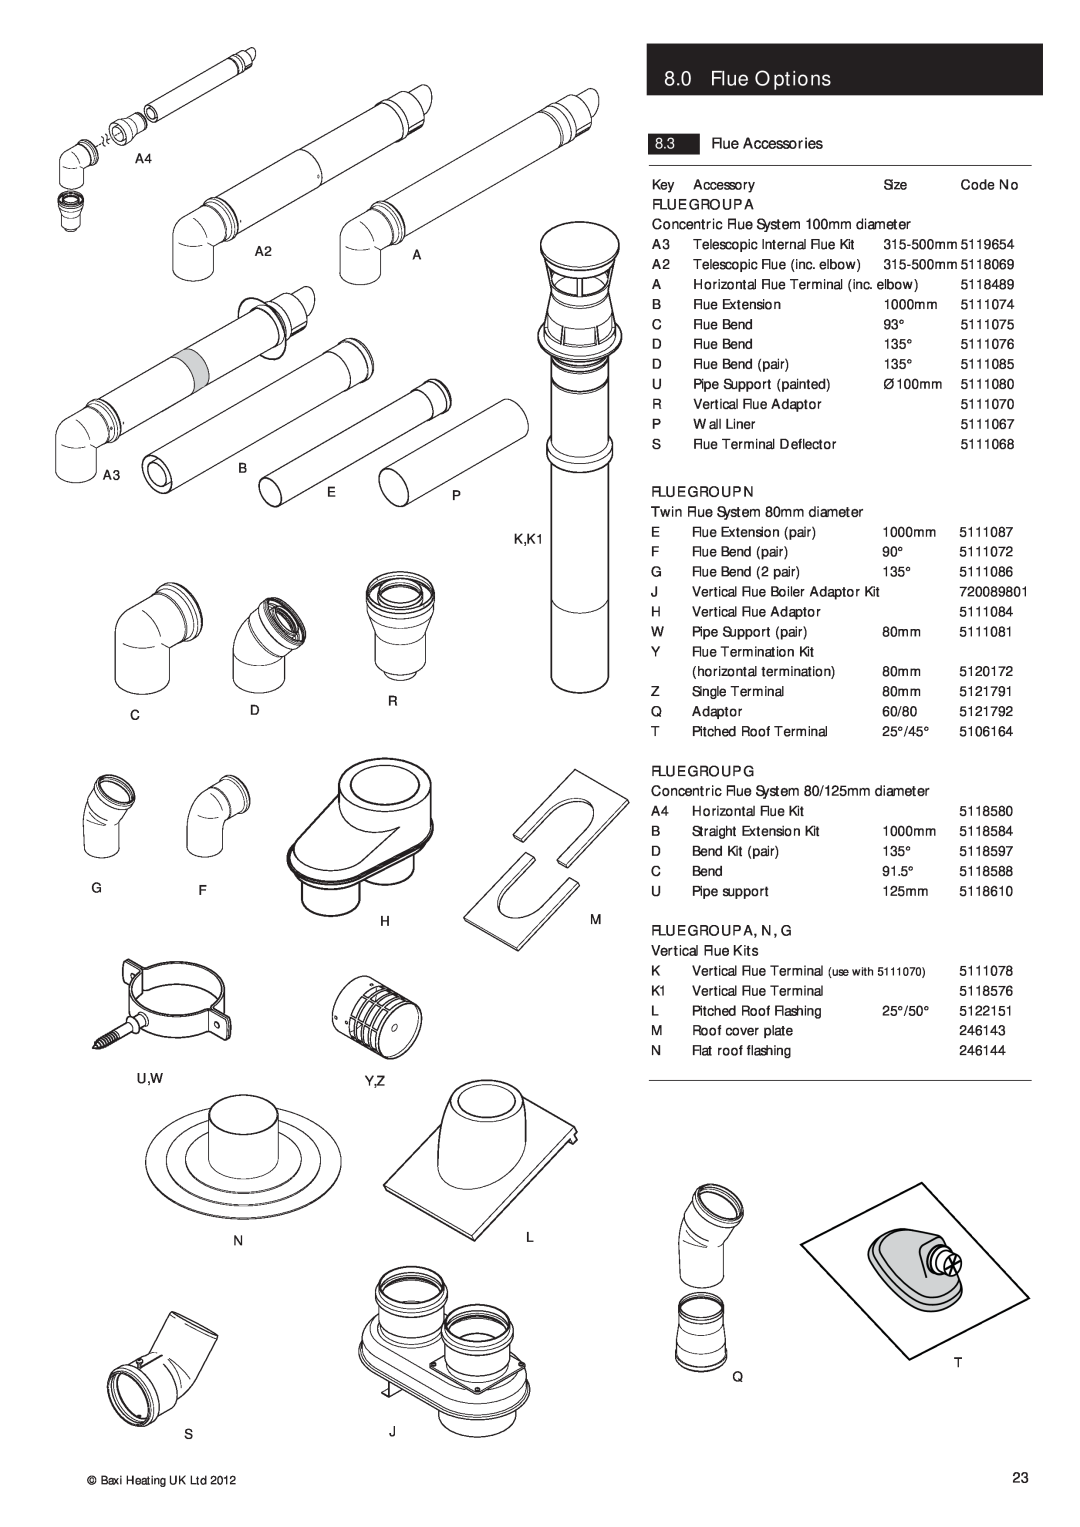 Potthof & Co 28kw, 24kw, 33kw manual 8.0Flue Options, 8.3Flue Accessories 